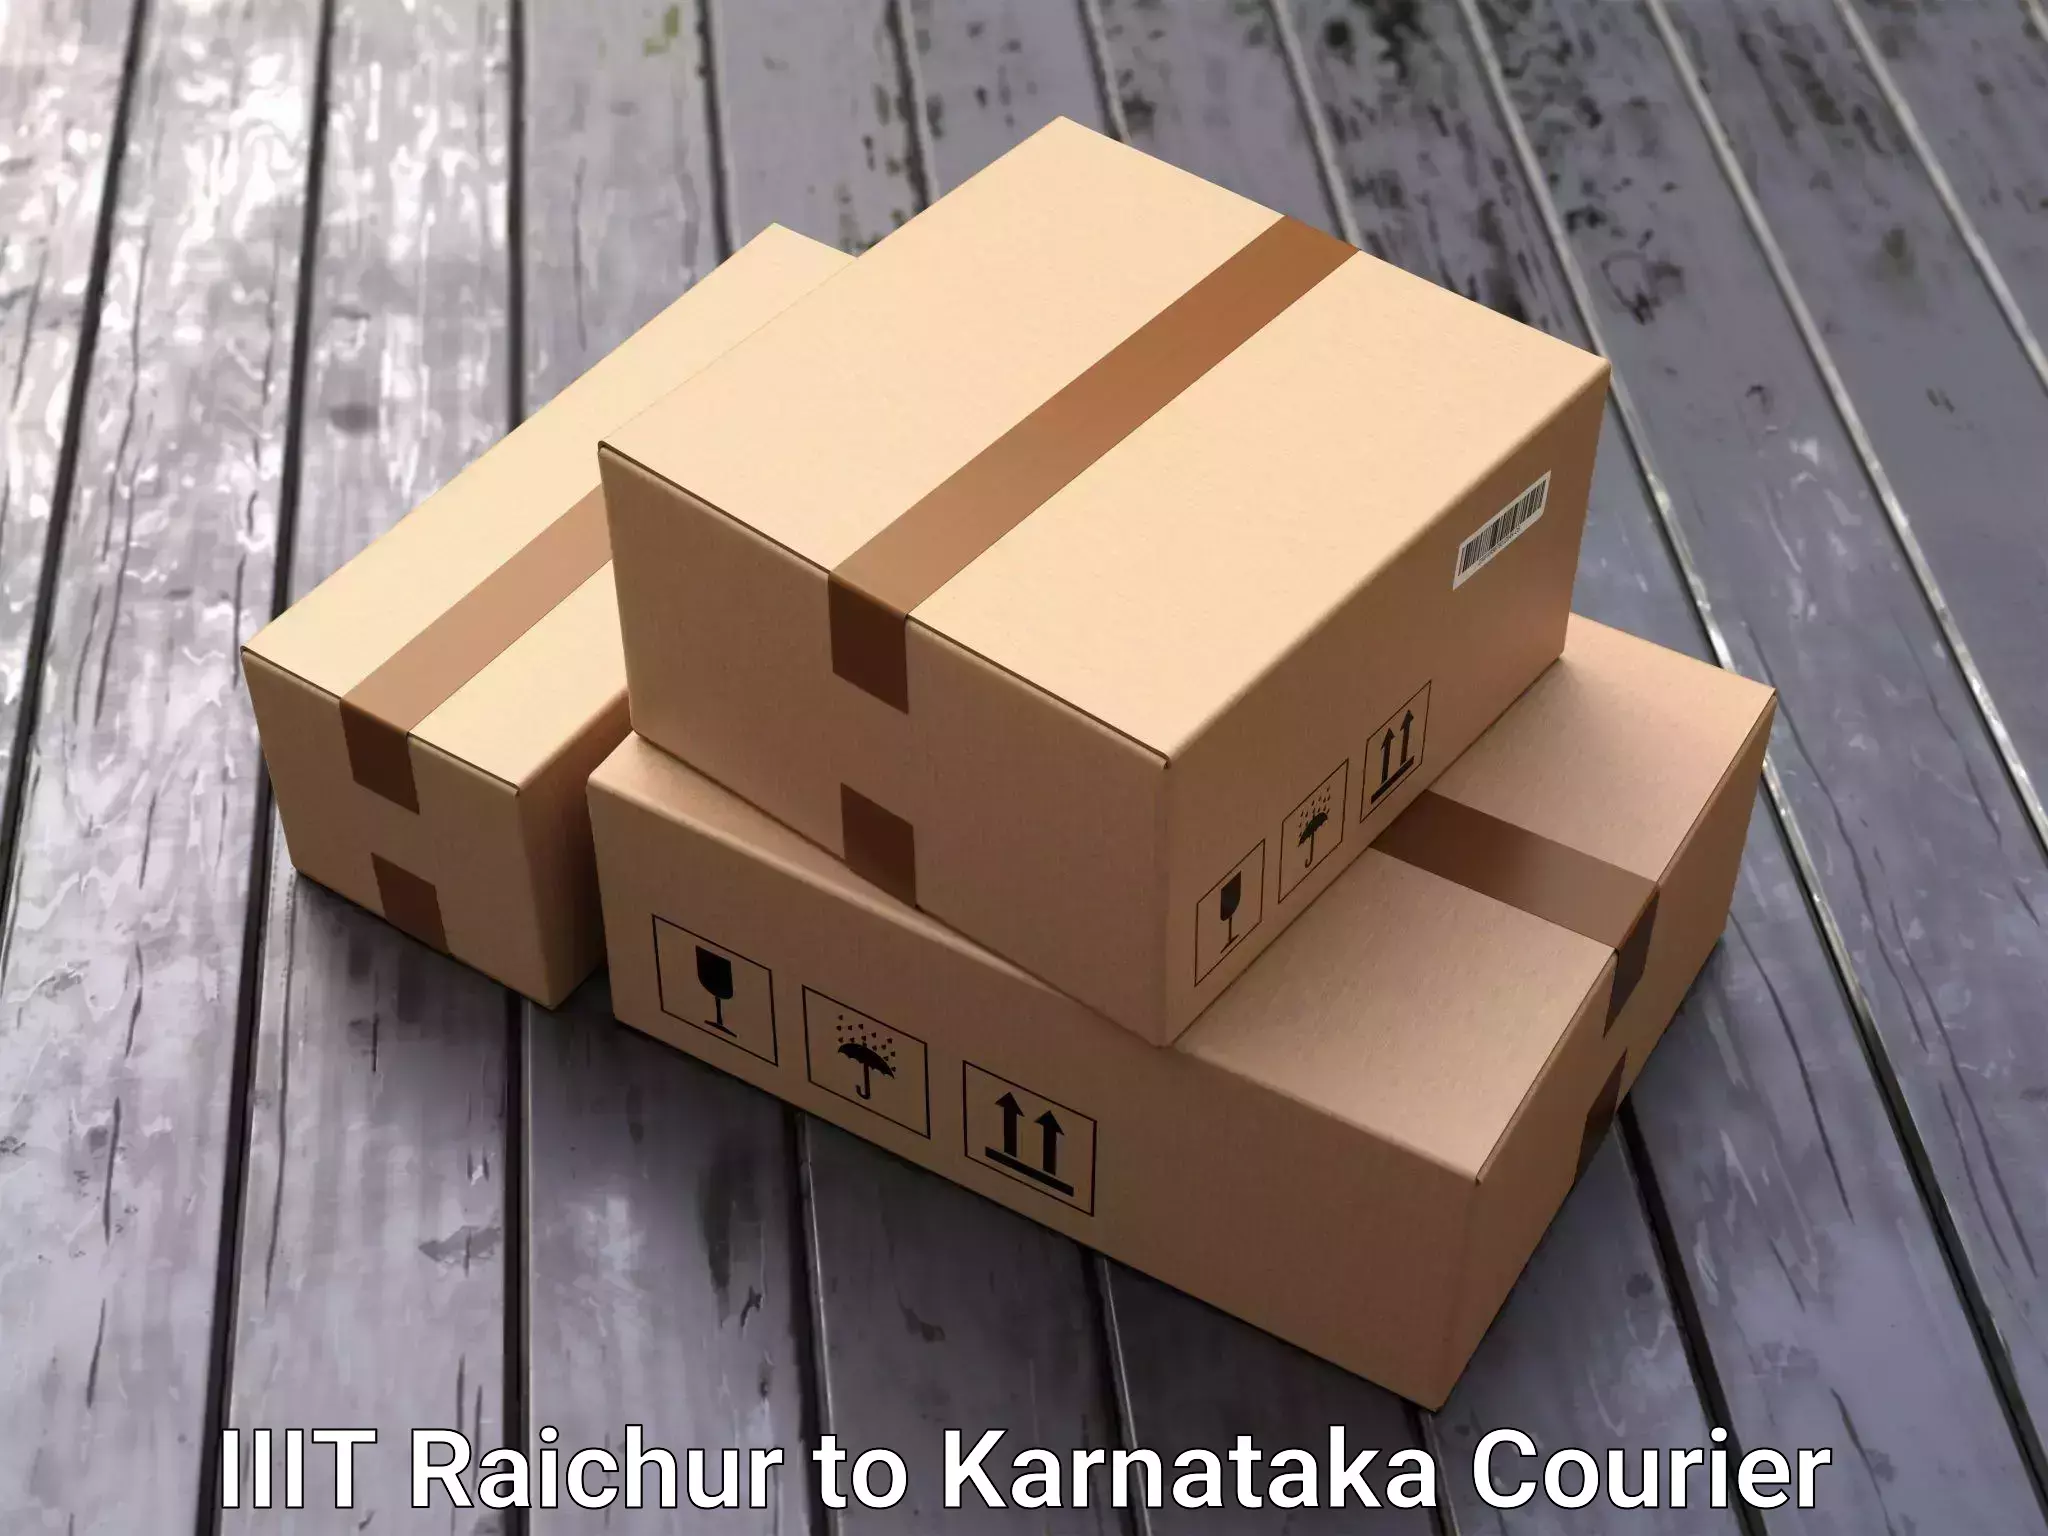 Efficient moving company IIIT Raichur to Karnataka